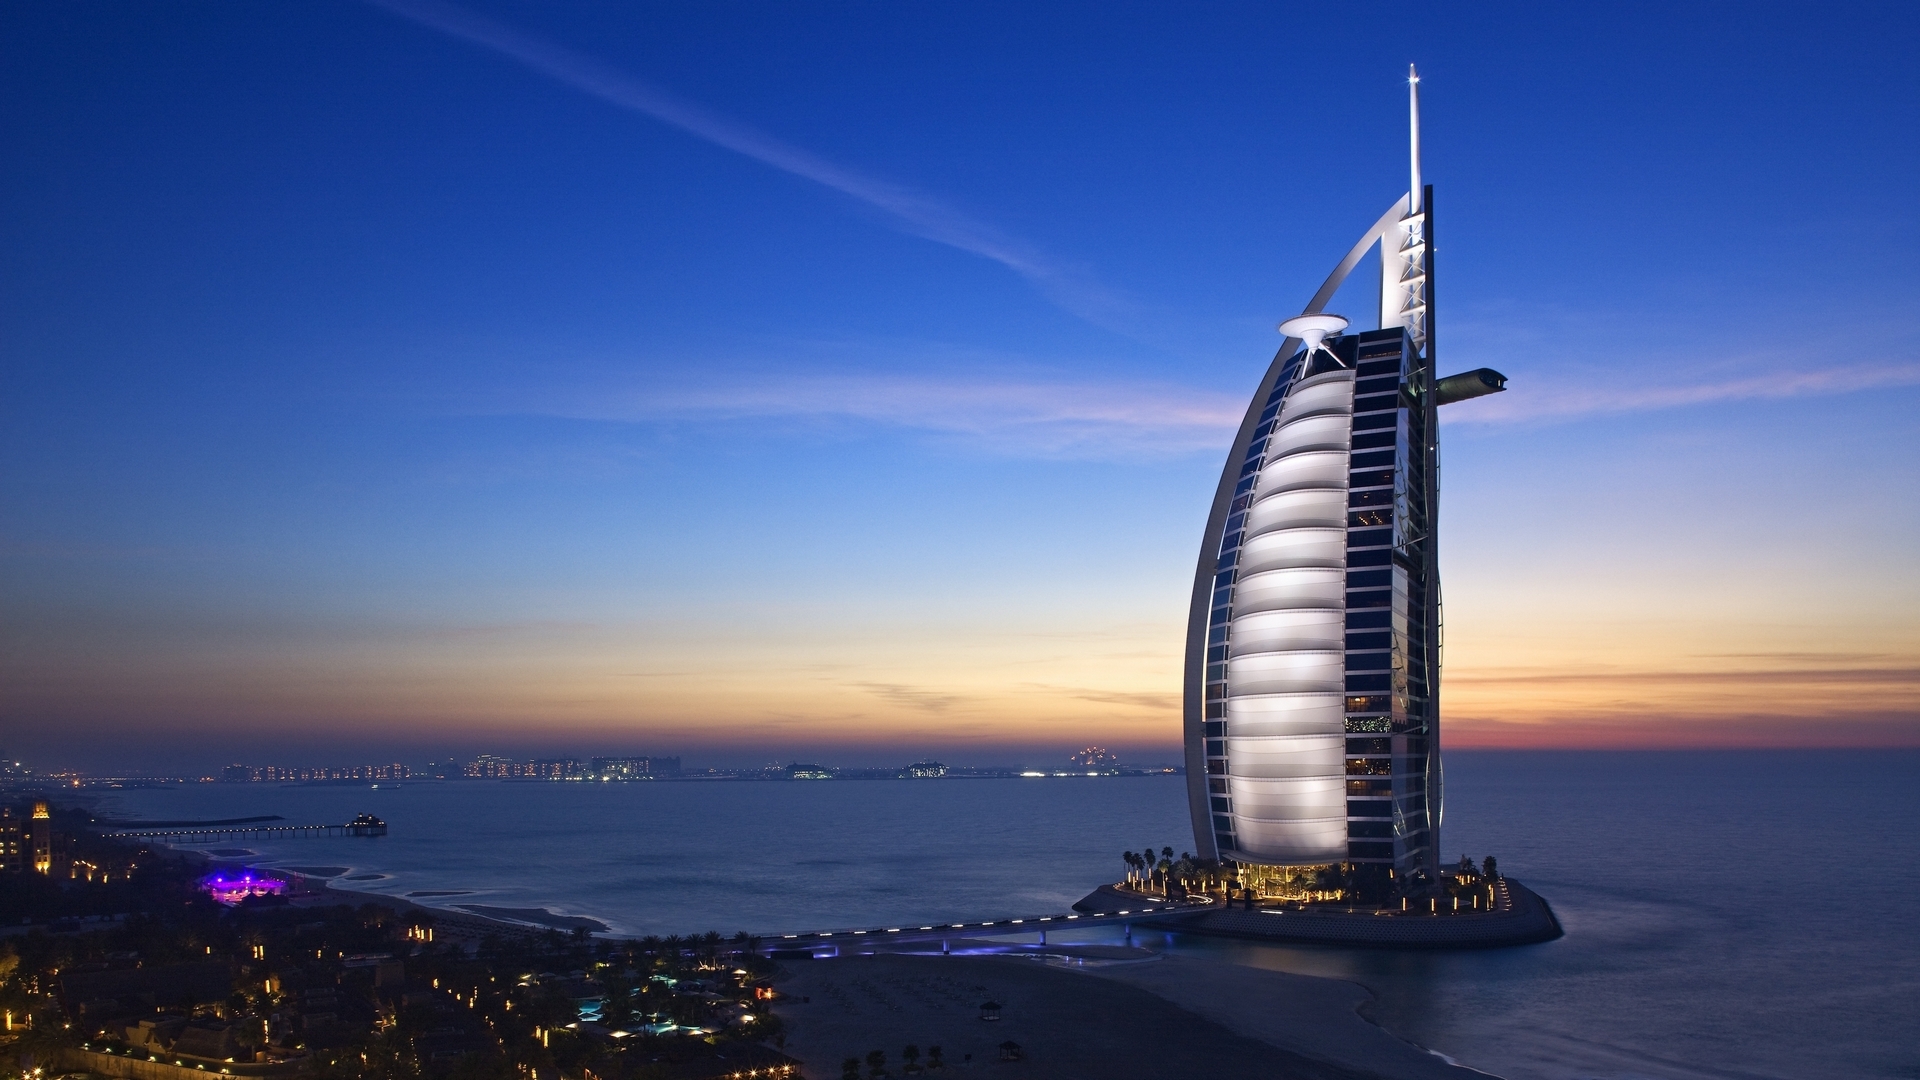 burj-al-arab-hotel-Dubai-uae-sky-sea-653539.jpg